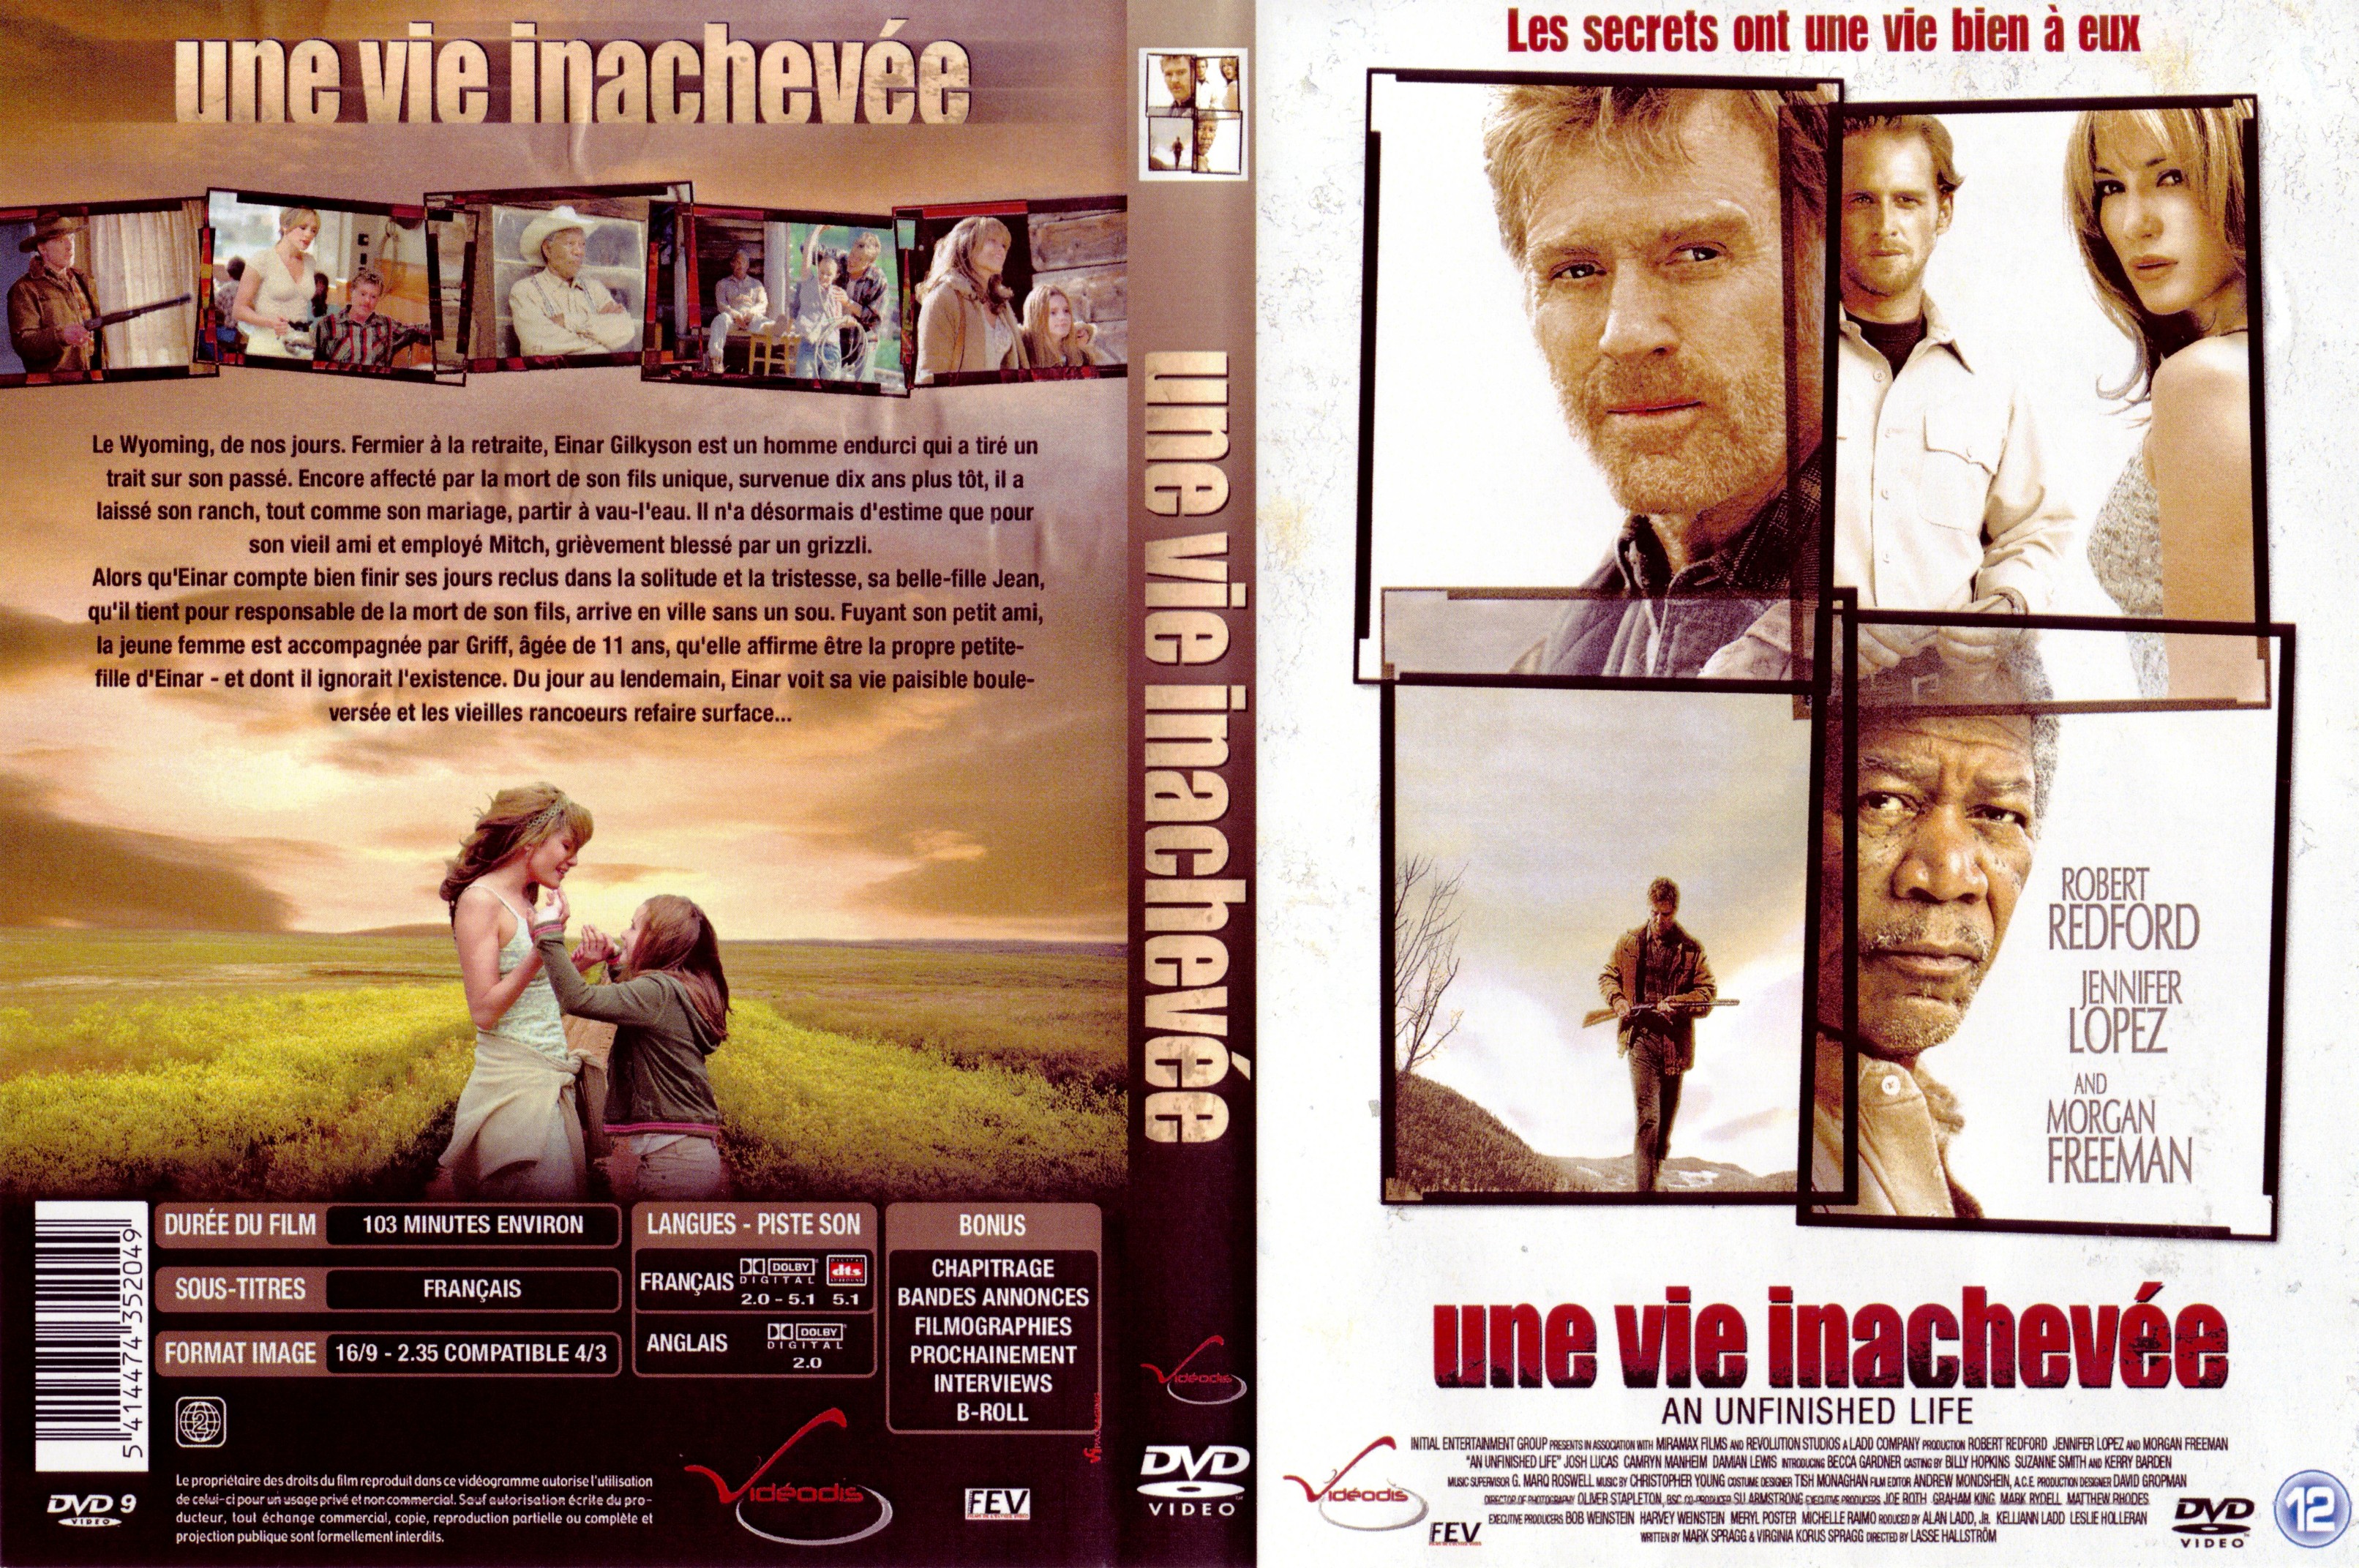 Jaquette DVD Une vie inacheve v2